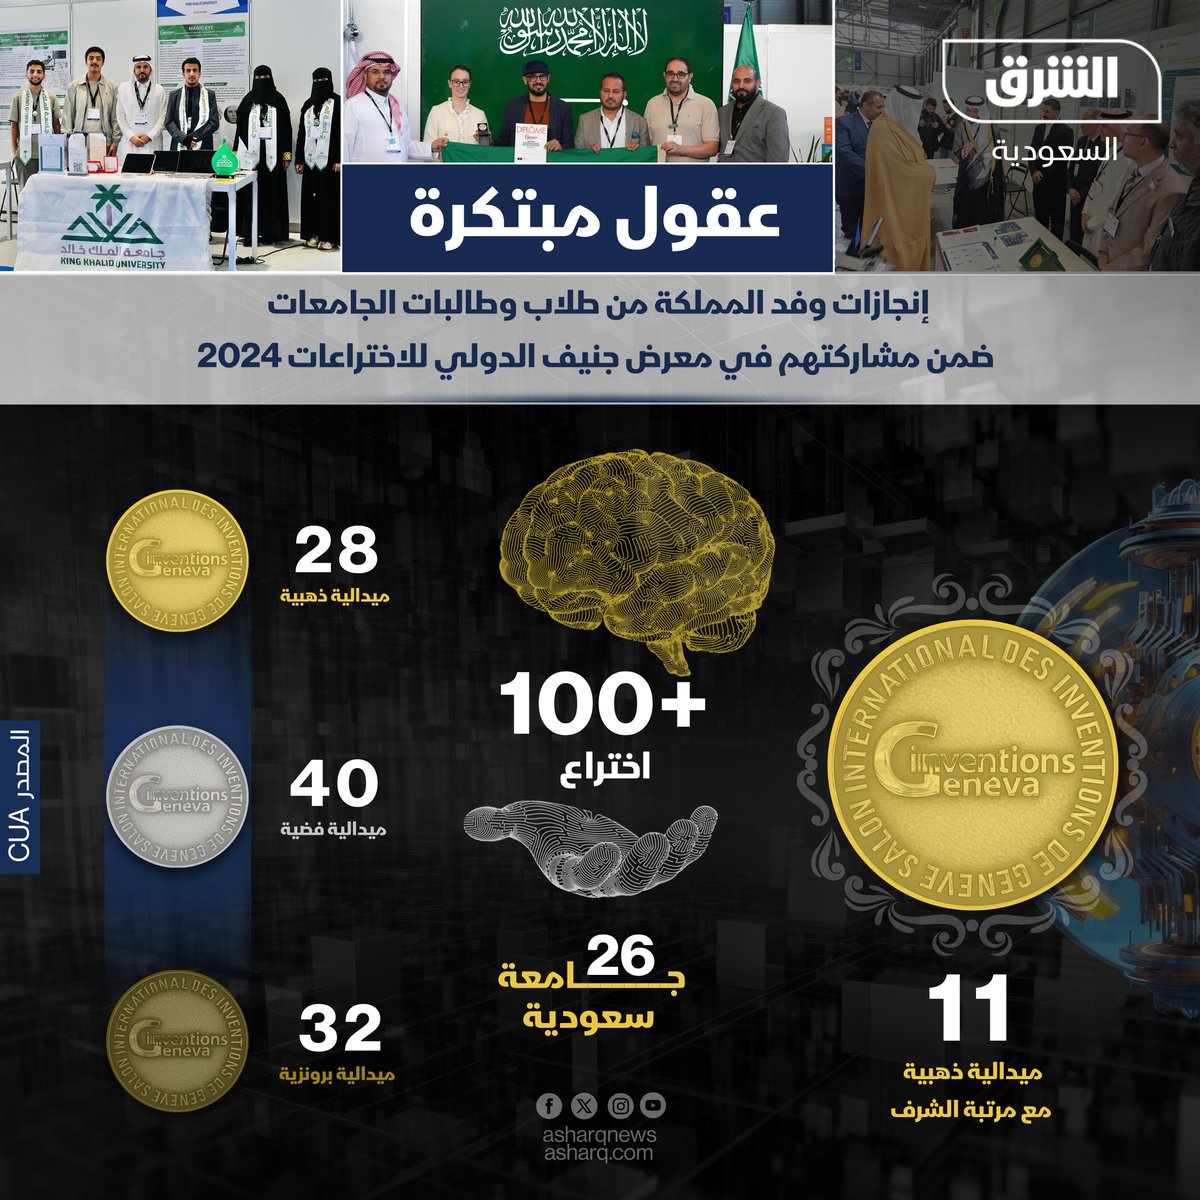 قدمت أكثر من 100 اختراع.. جامعات سعودية تحصد عشرات الميداليات بعد مشاركتها بمعرض جنيف الدولي للاختراعات #الشرق #الشرق_للأخبار